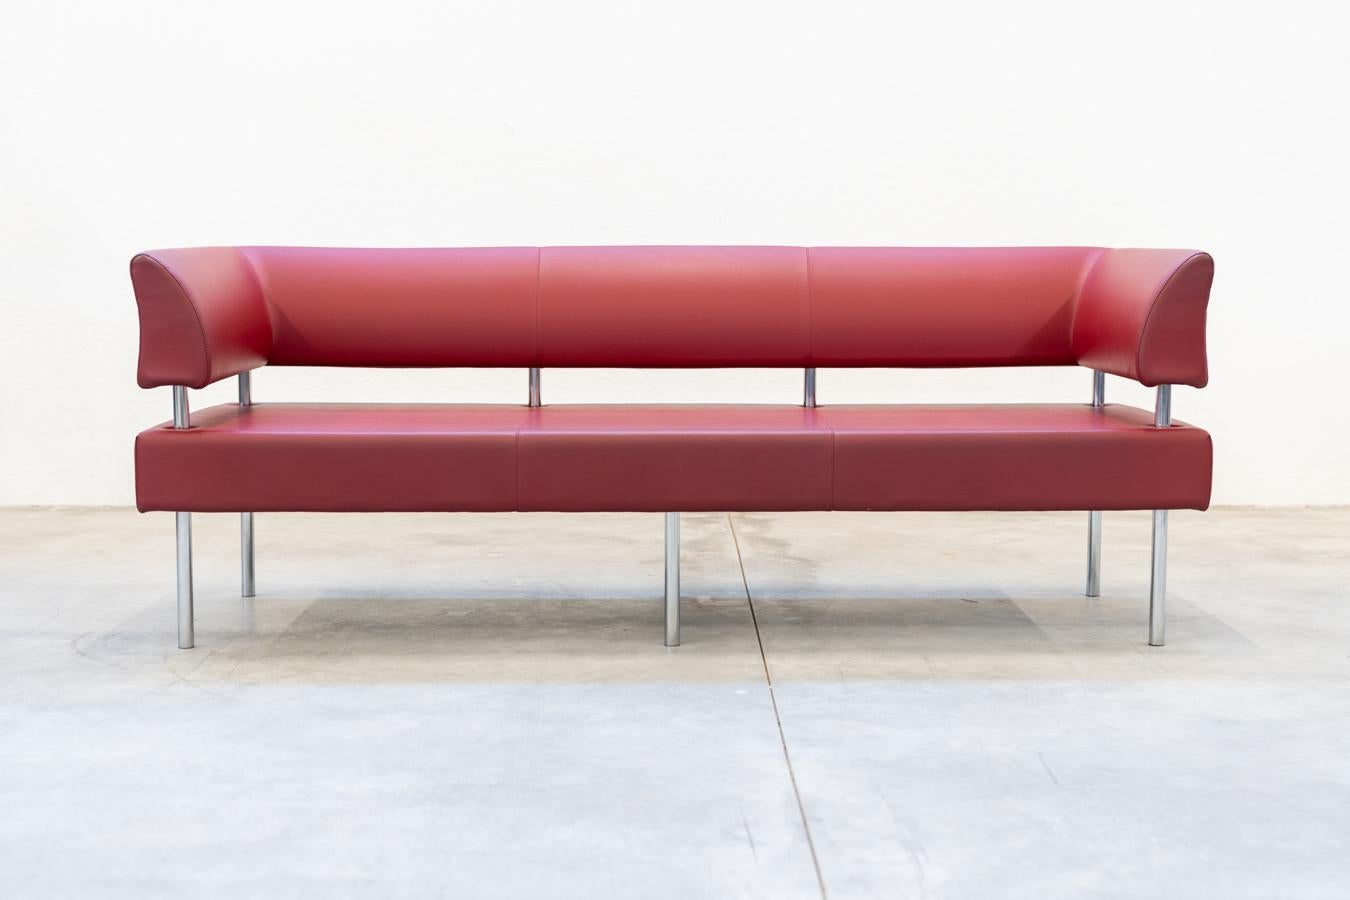 3-sitziges Business Class Sofa in rotem Leder und verchromten Eisenfüßen, 1990er Jahre
Beauty Star gepolstertes Sofa	hergestellt in Italien, mit Formen, die die 	zuverlässigkeit und eine ausgezeichnete Wahl für die Installation von